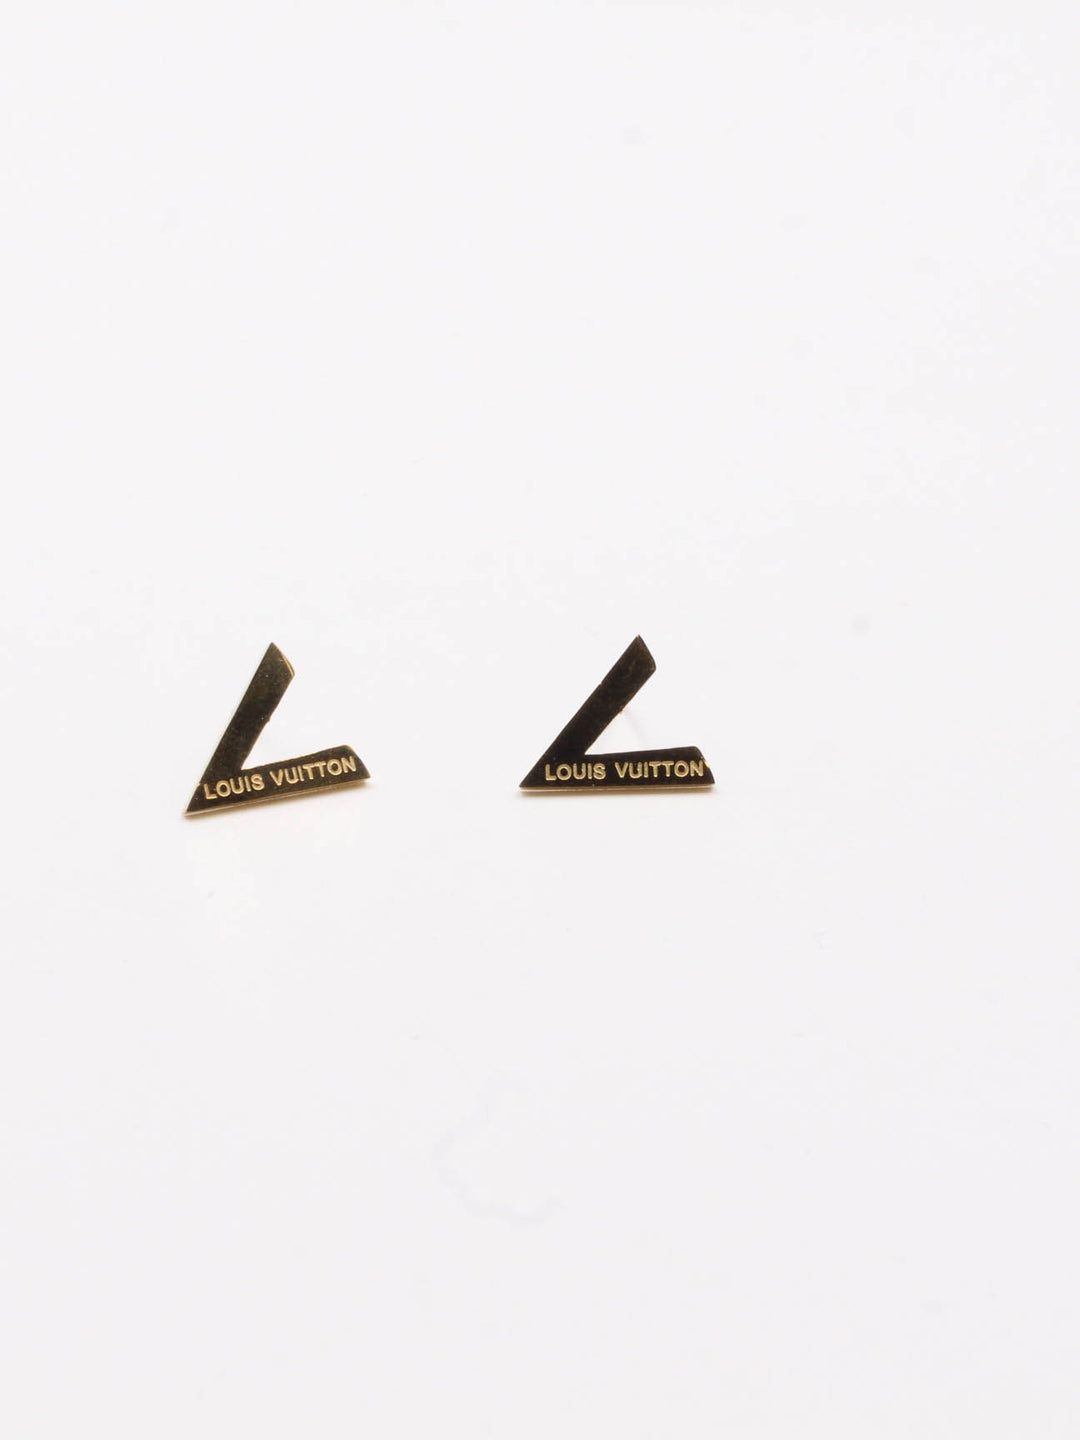 earring brand Louis Vuitton - حلق ماركة لويس فيتون ذهبي - Jewel